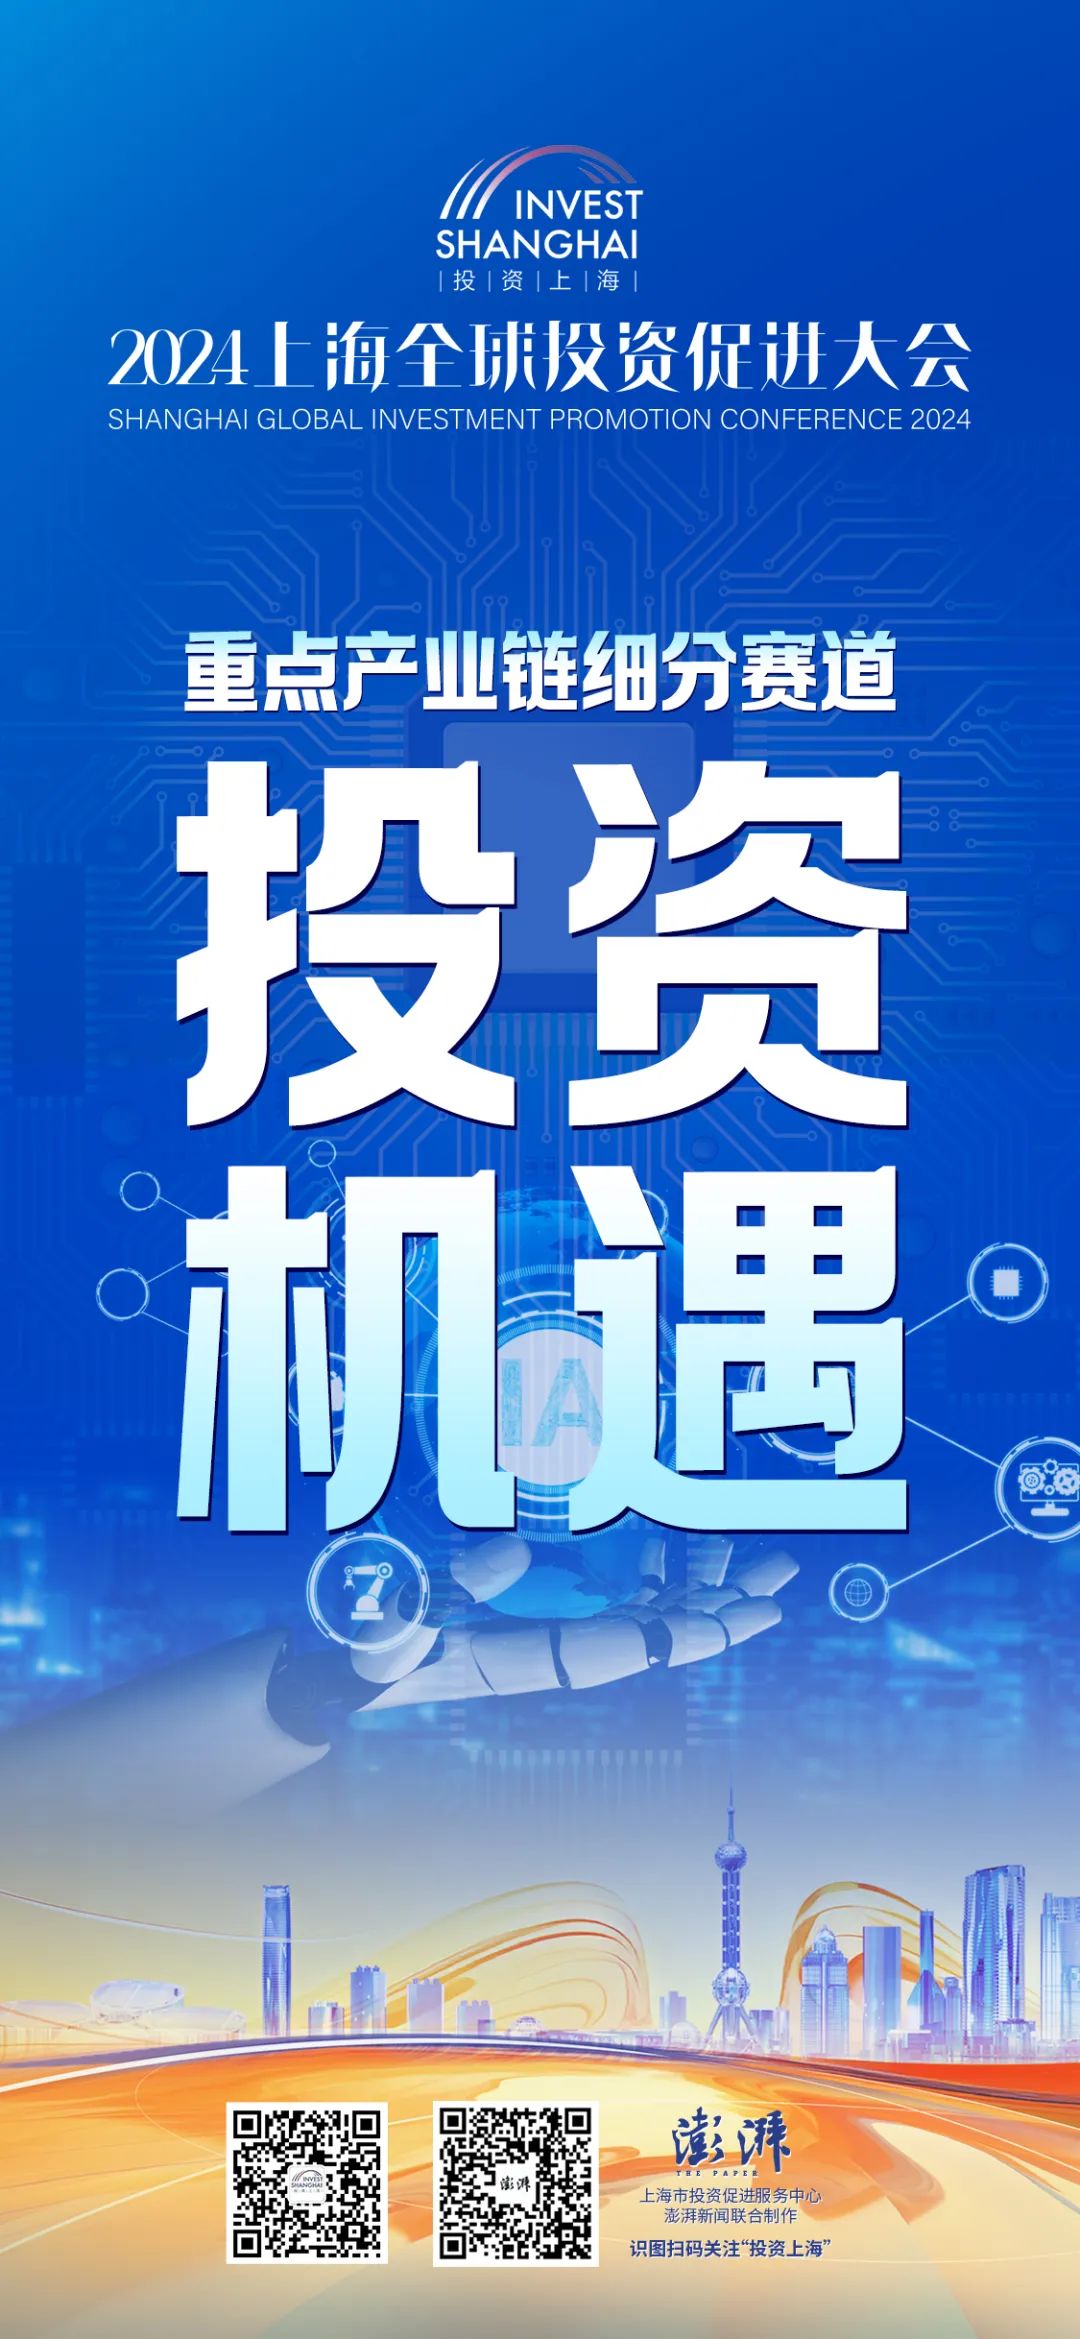 多图聚焦上海重点产业链细分赛道